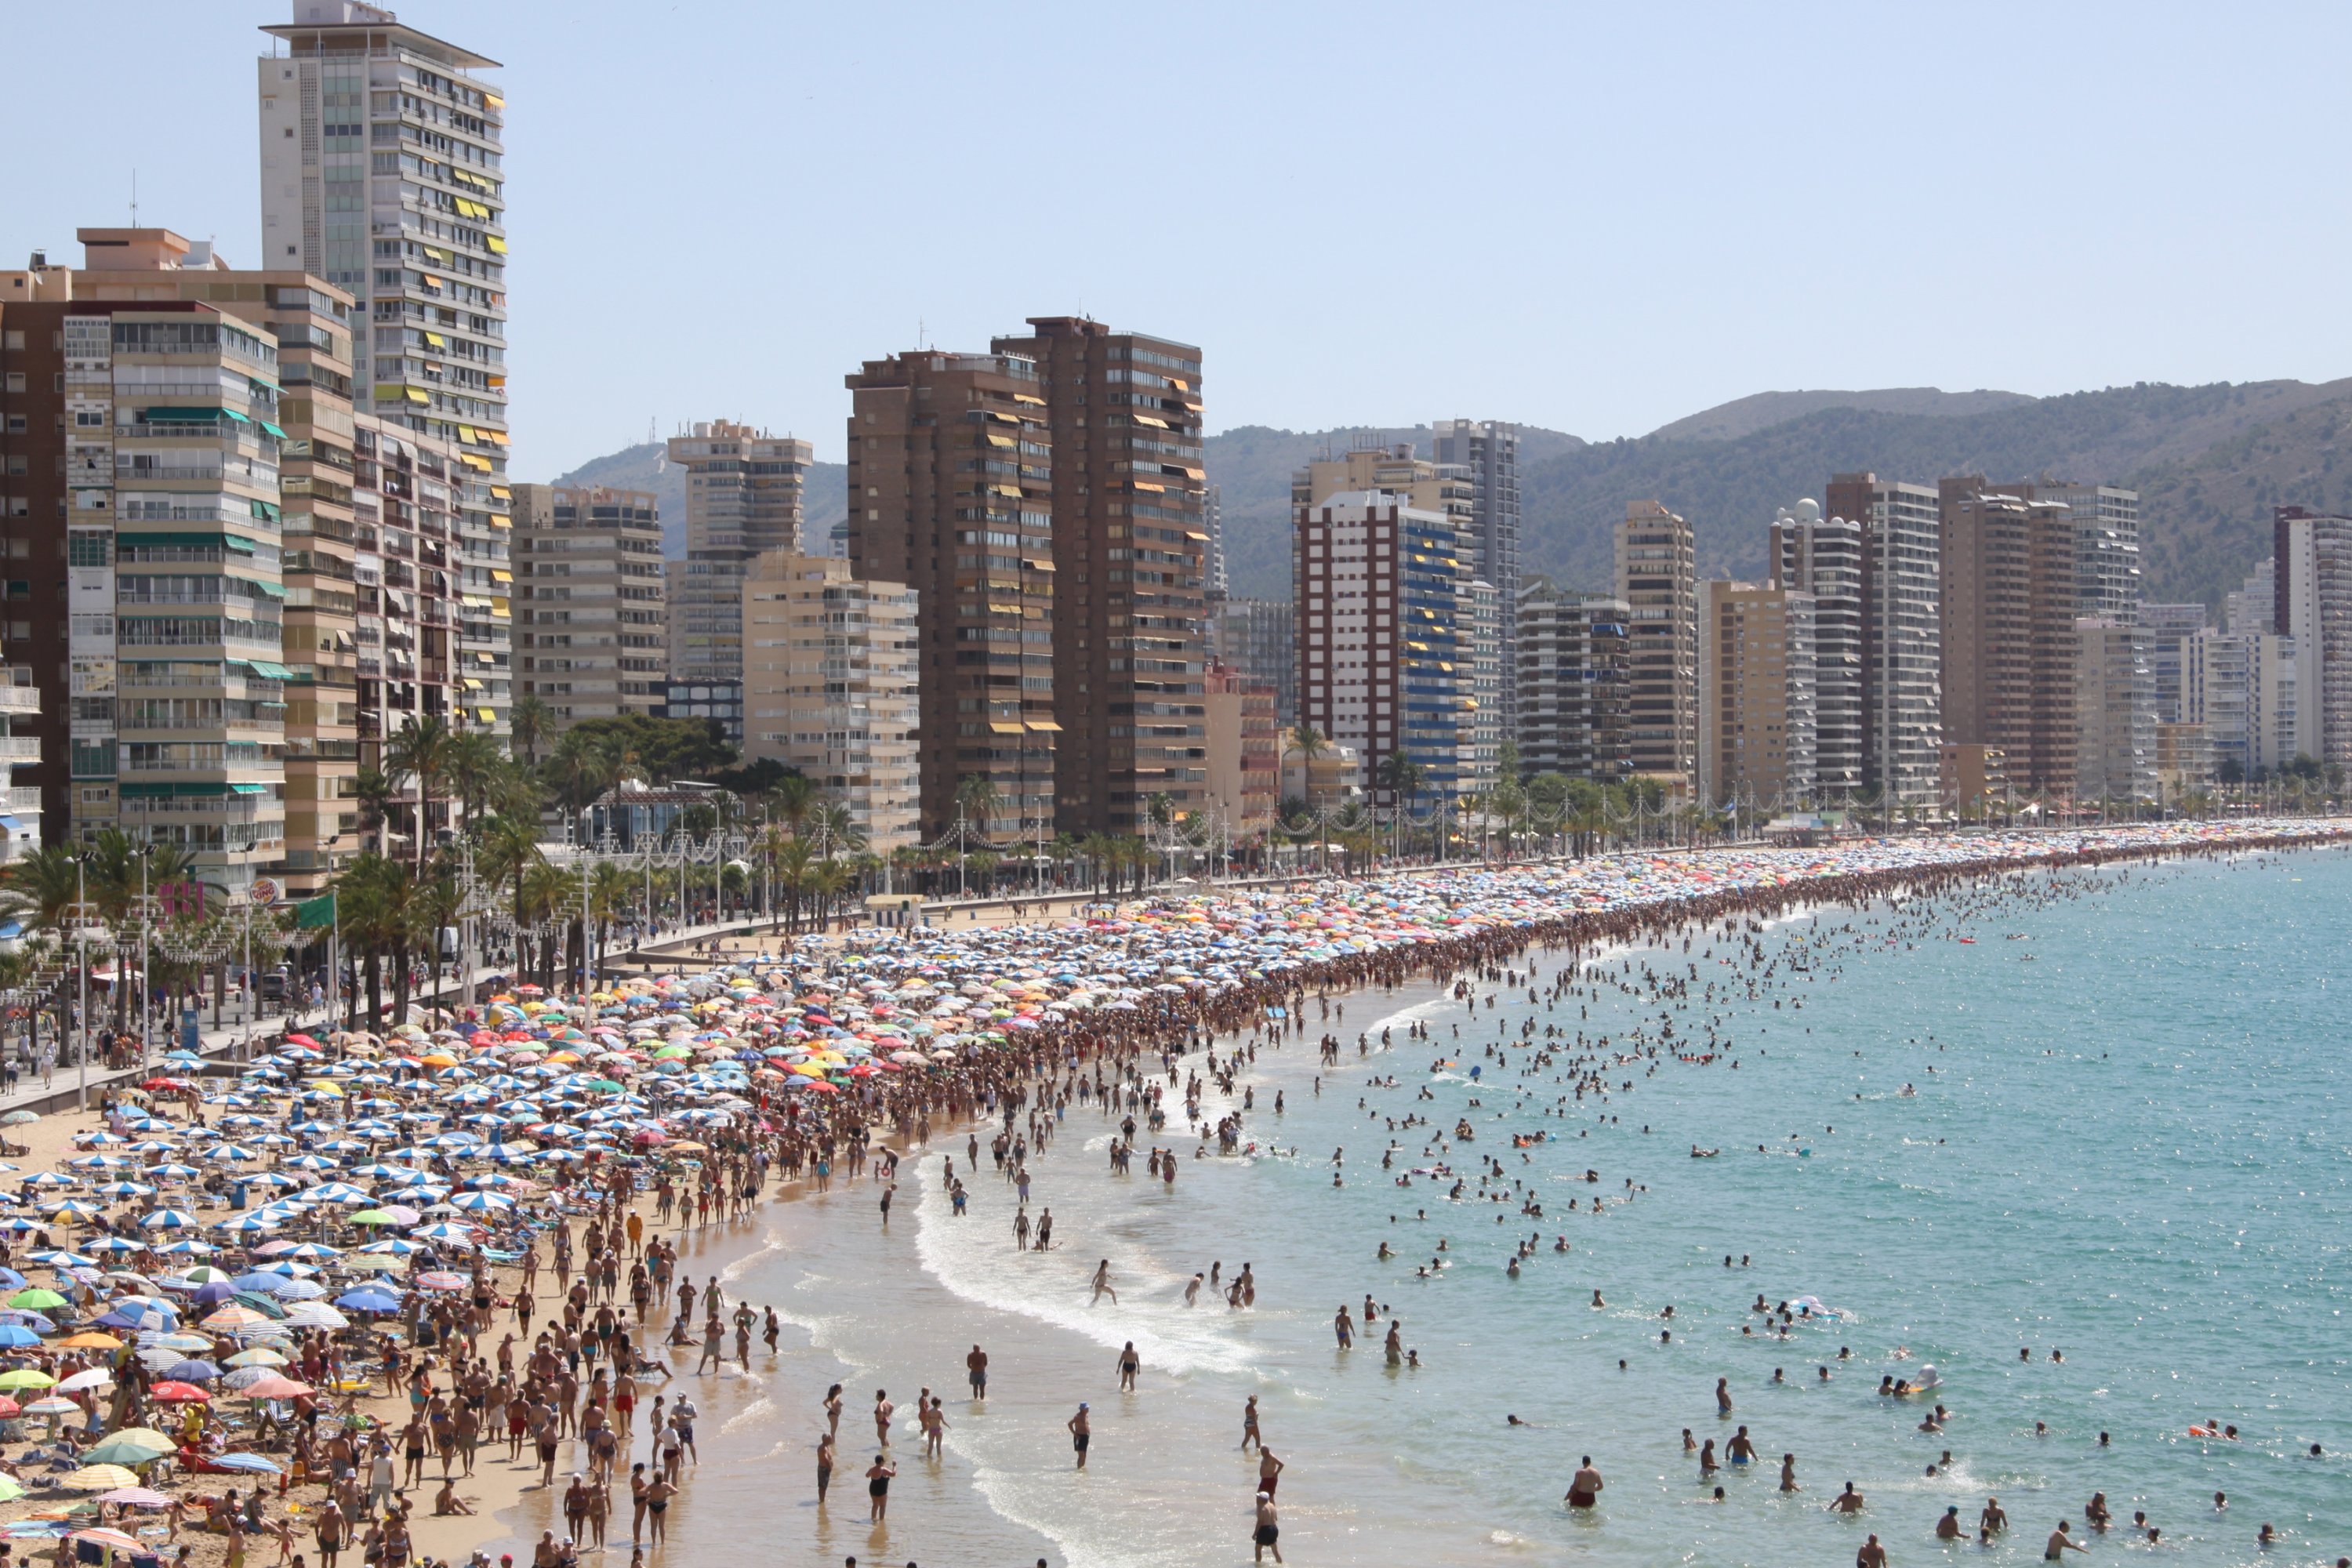   Costa Blanca dikenal dengan banyak turis yang berkumpul di sana untuk menikmati pantainya.  (foto dpa) 